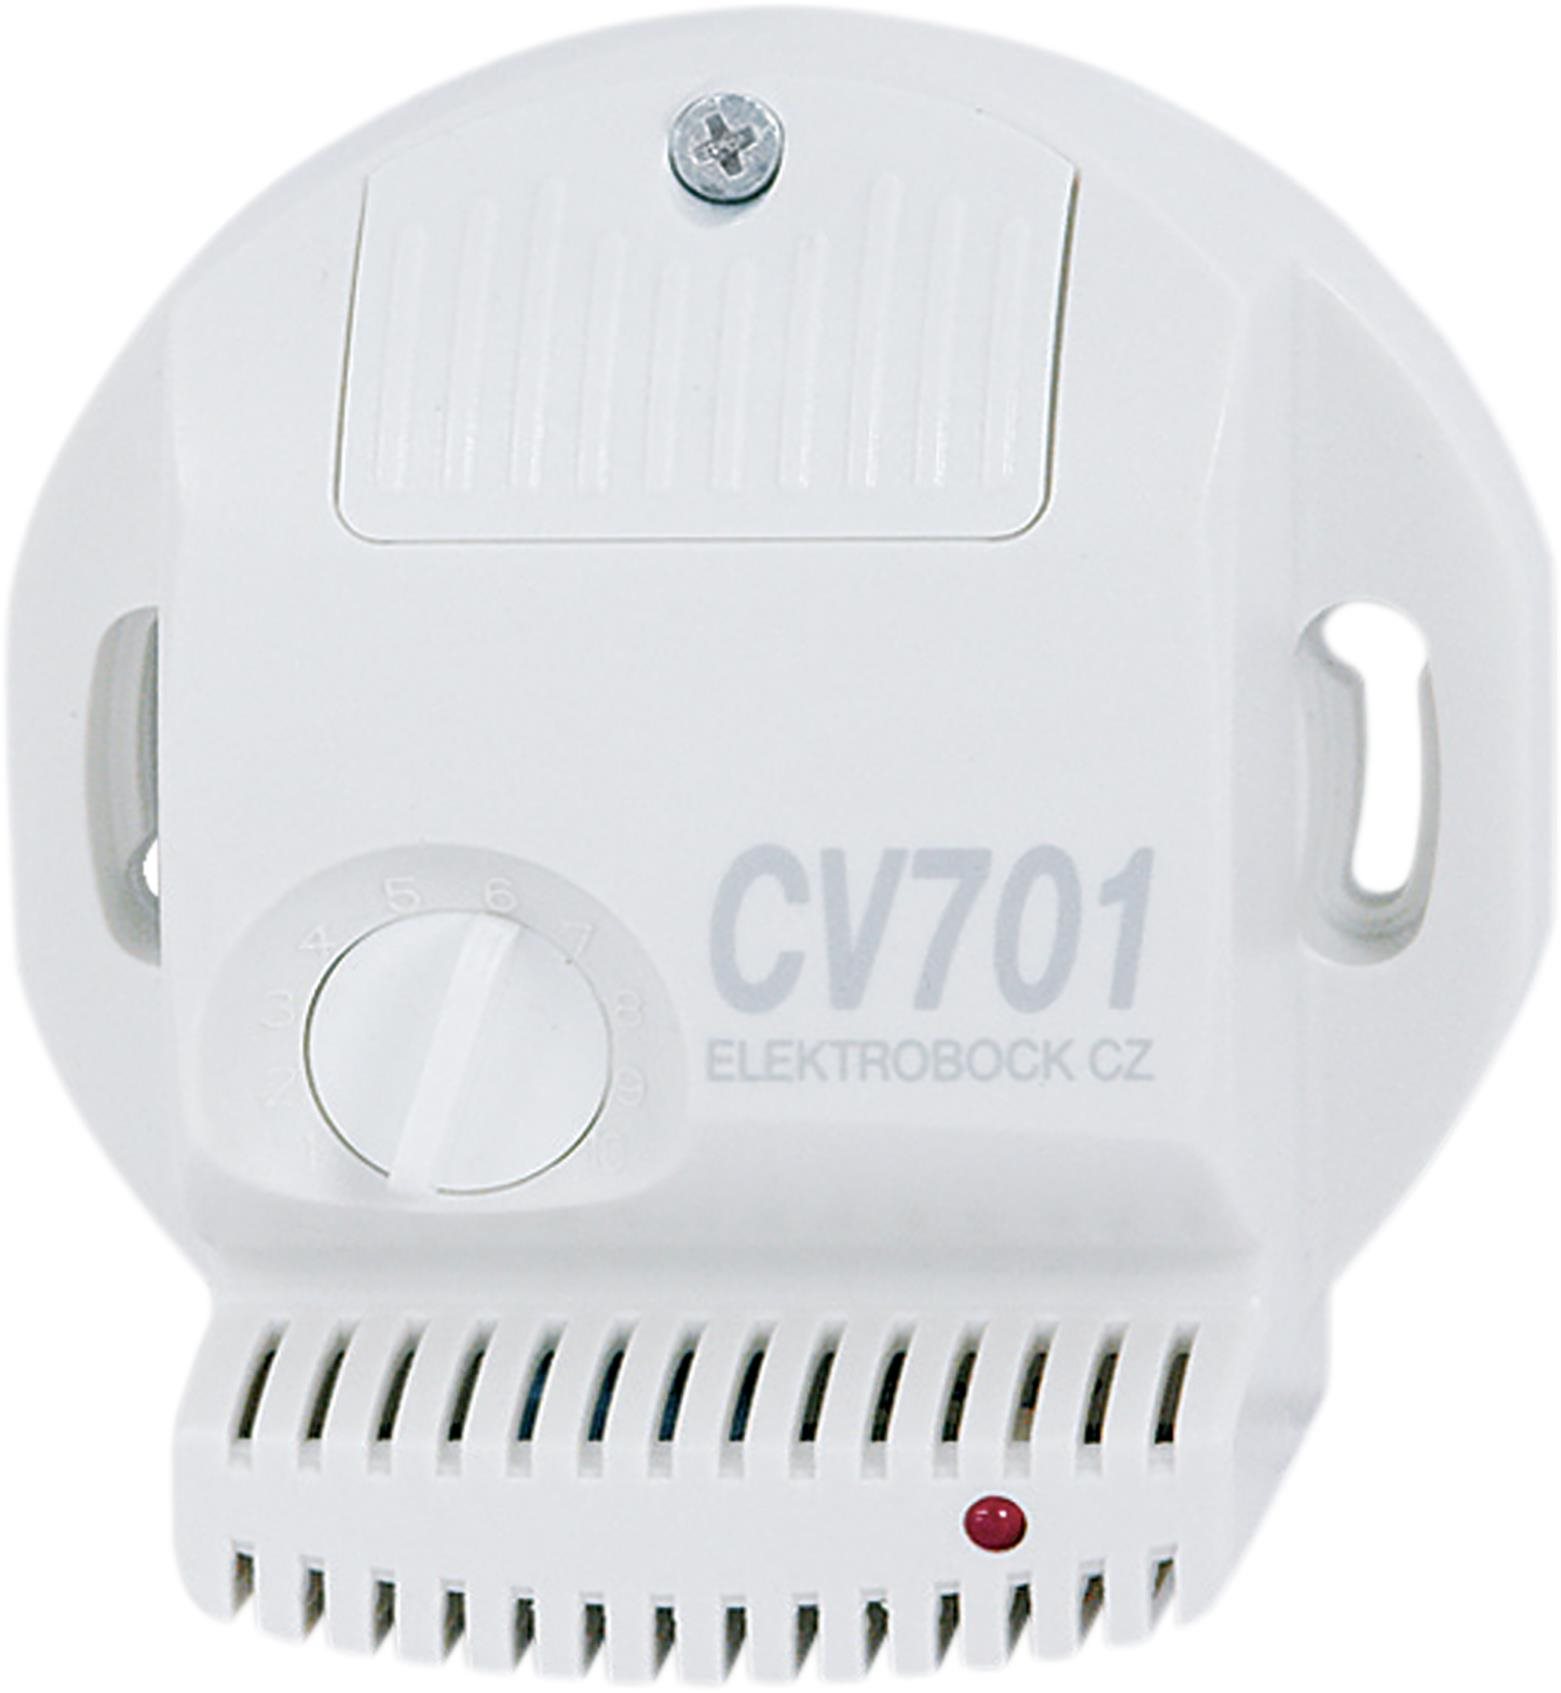 Elektrobock CV701